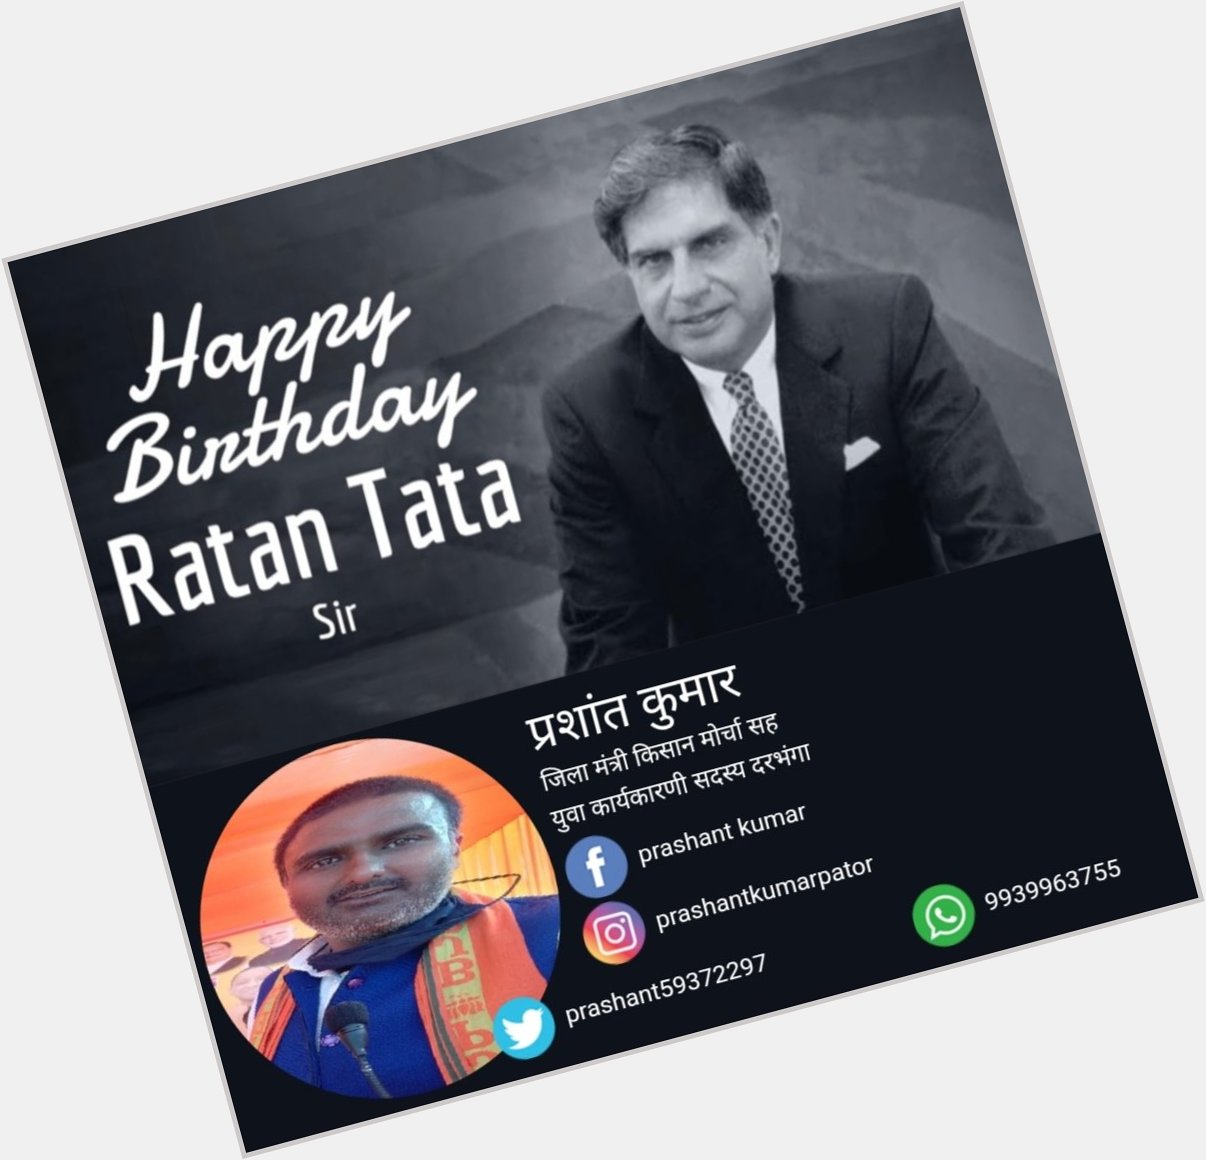 Happy birthday Sir Ratan Tata 